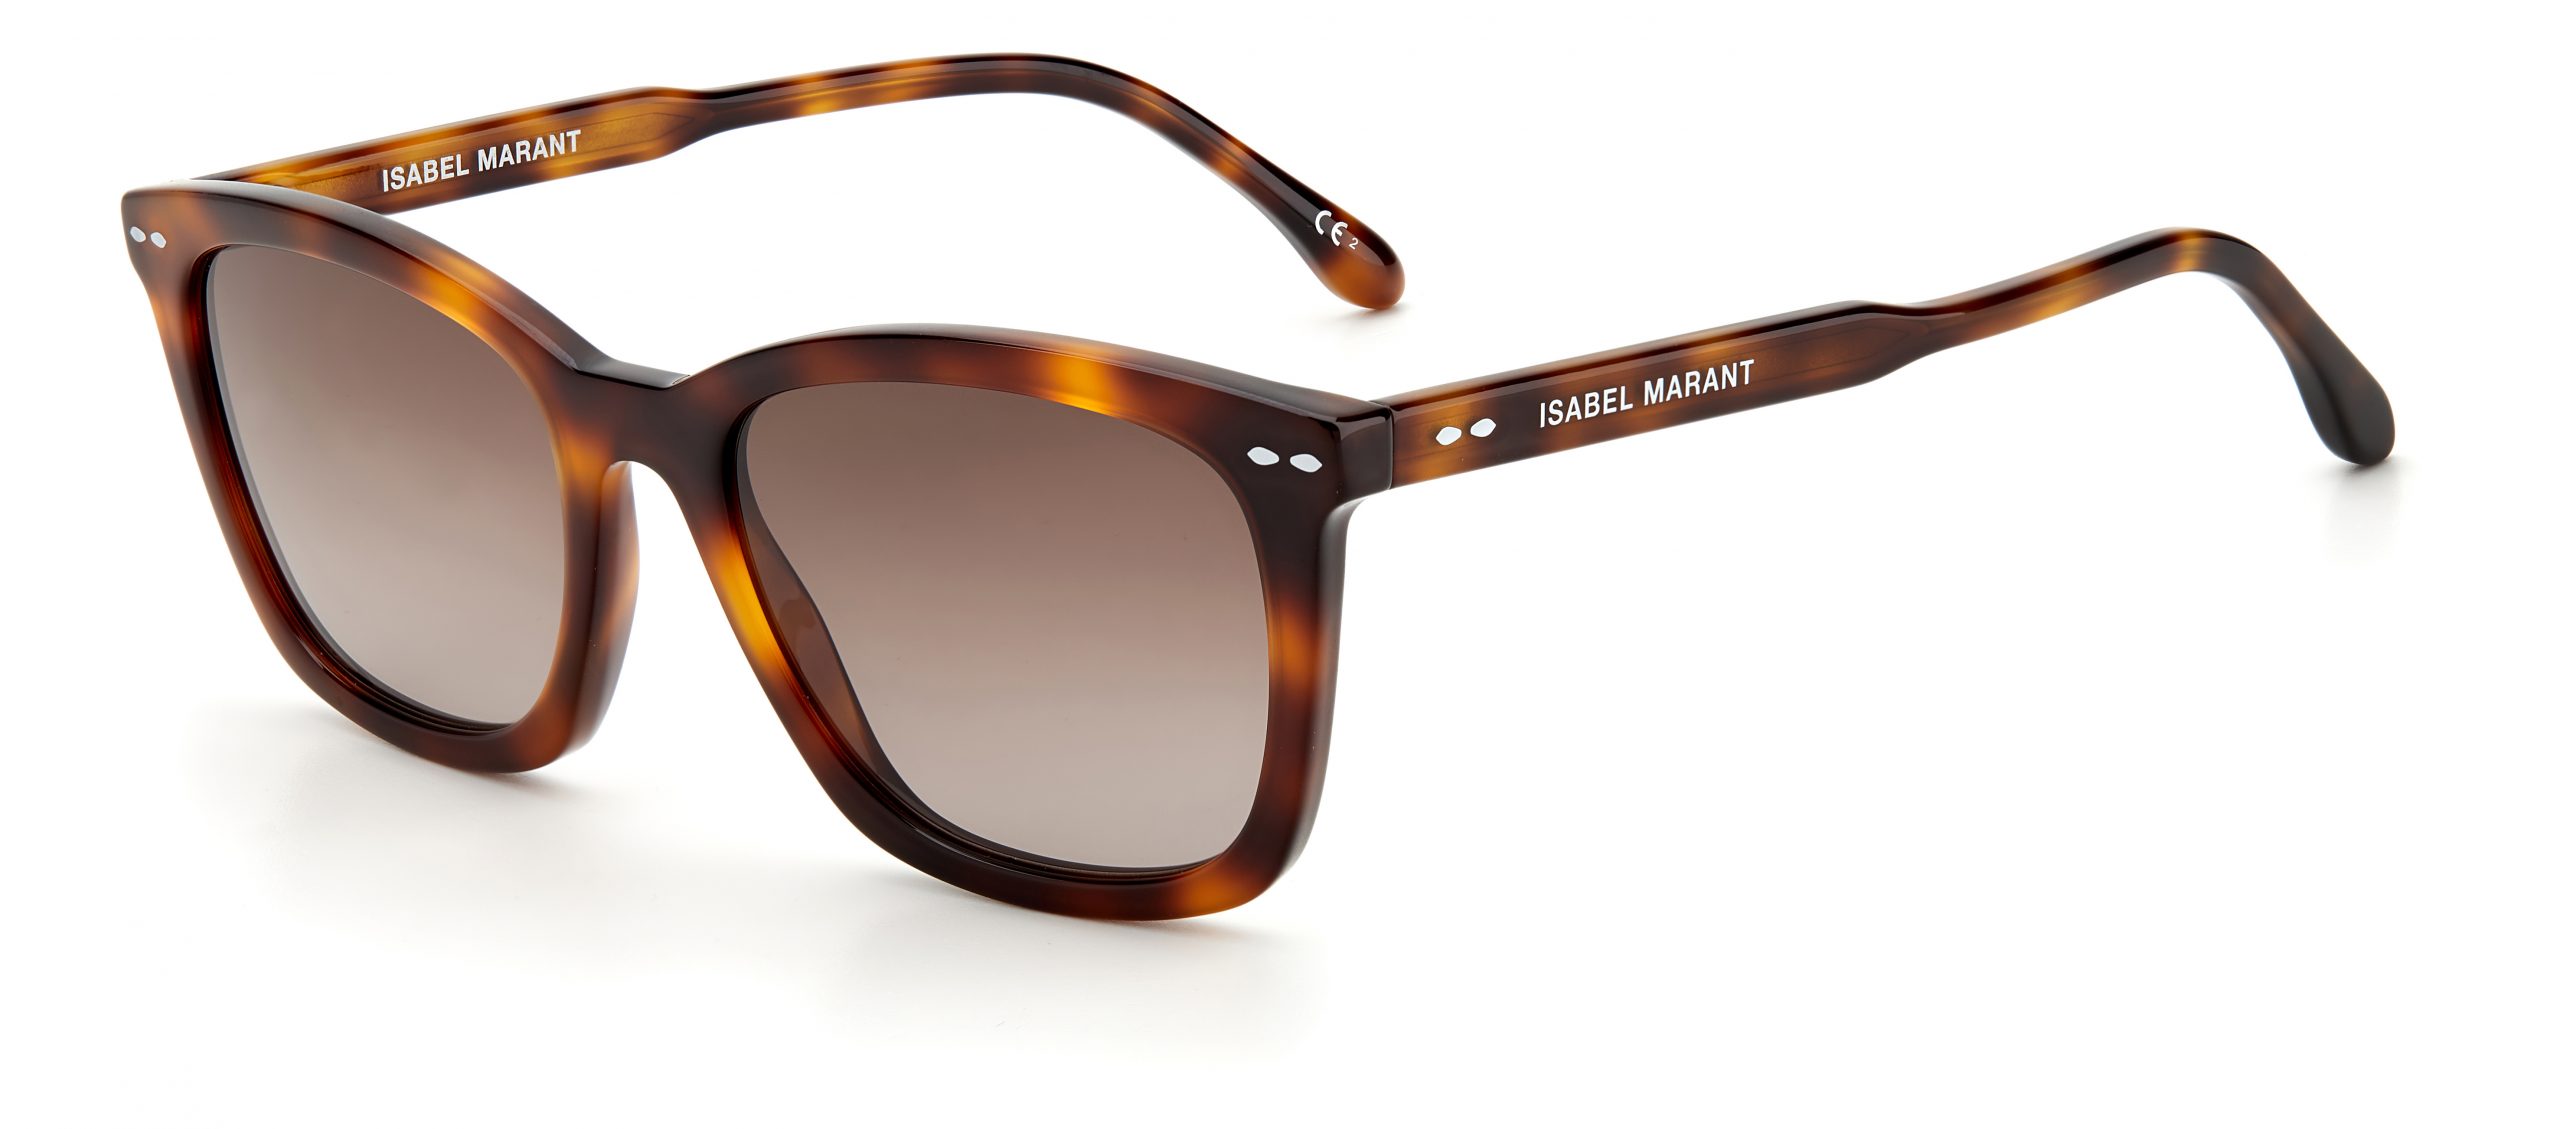 0010/S 086 ISABEL MARANT Sunglasses | George & Matilda Eyecare and Optometrist